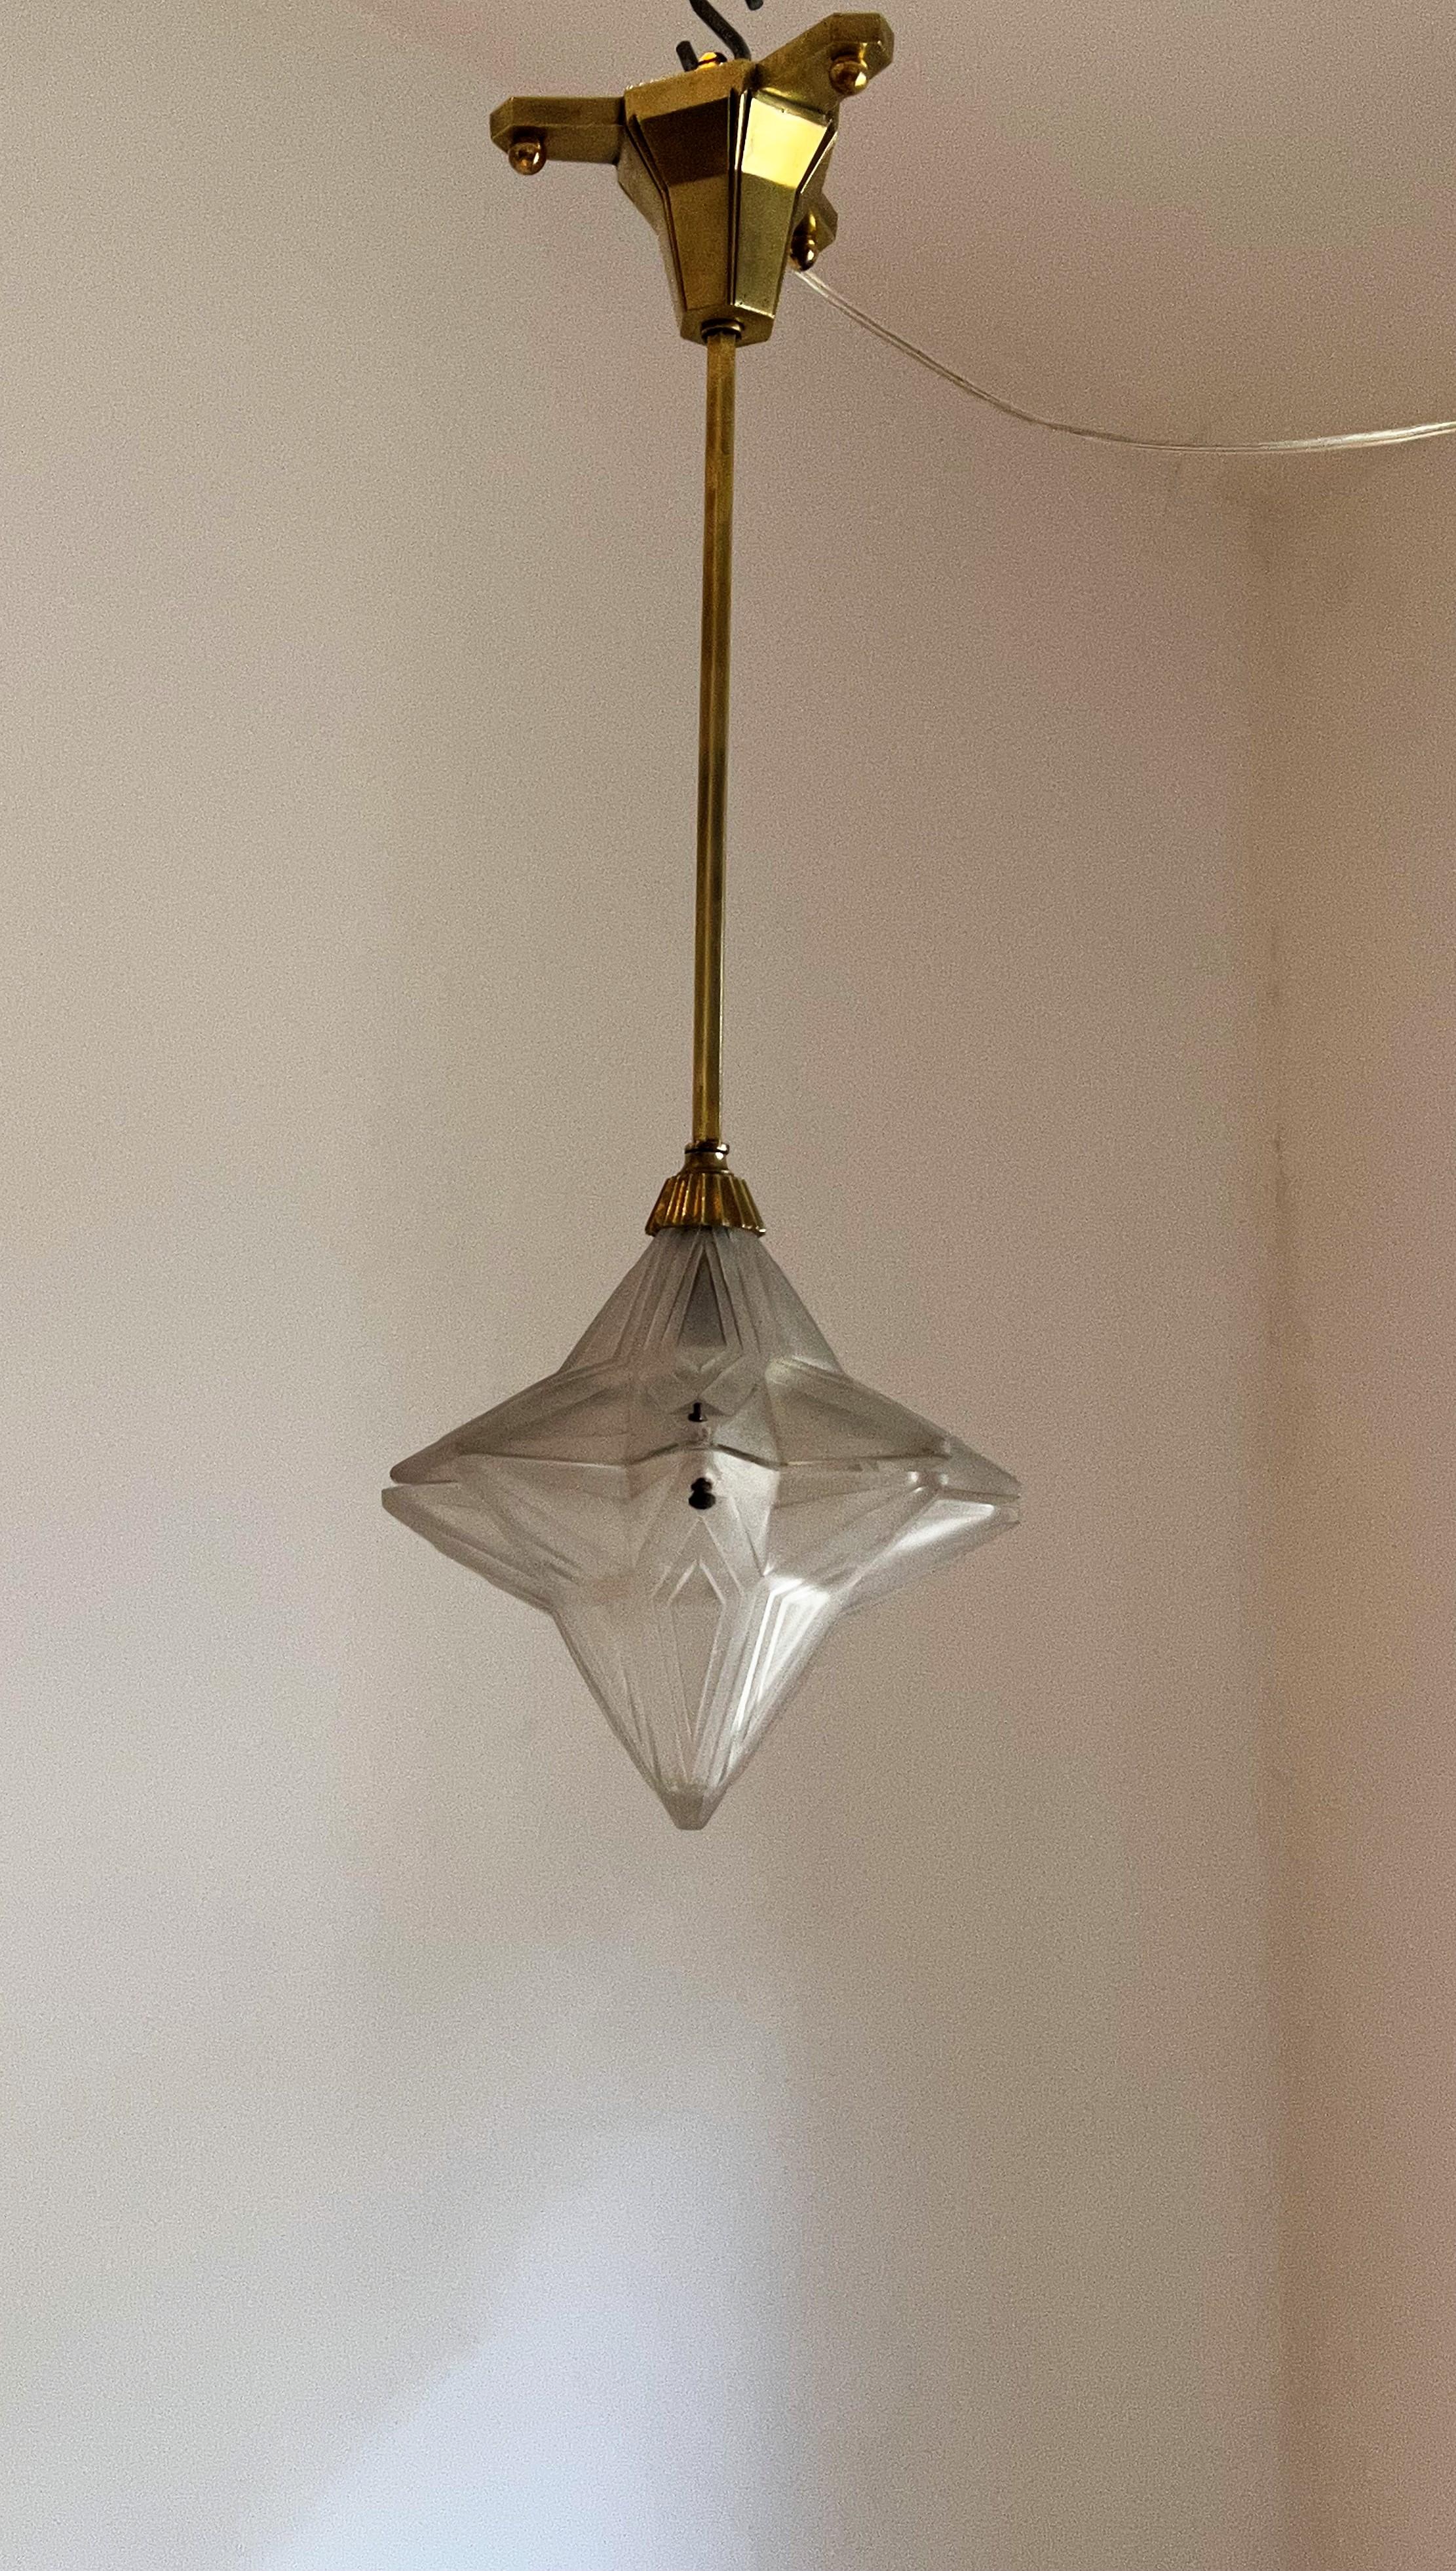 Magnifique lanterne d'entrée Art Déco de Genet Michon fabriquée en laiton et verre pressé en forme d'étoile.
Le verre est signé, il y a quelques petits éclats qui ne se voient pas une fois accroché.
Cette lanterne peut être suspendue ou montée à ras